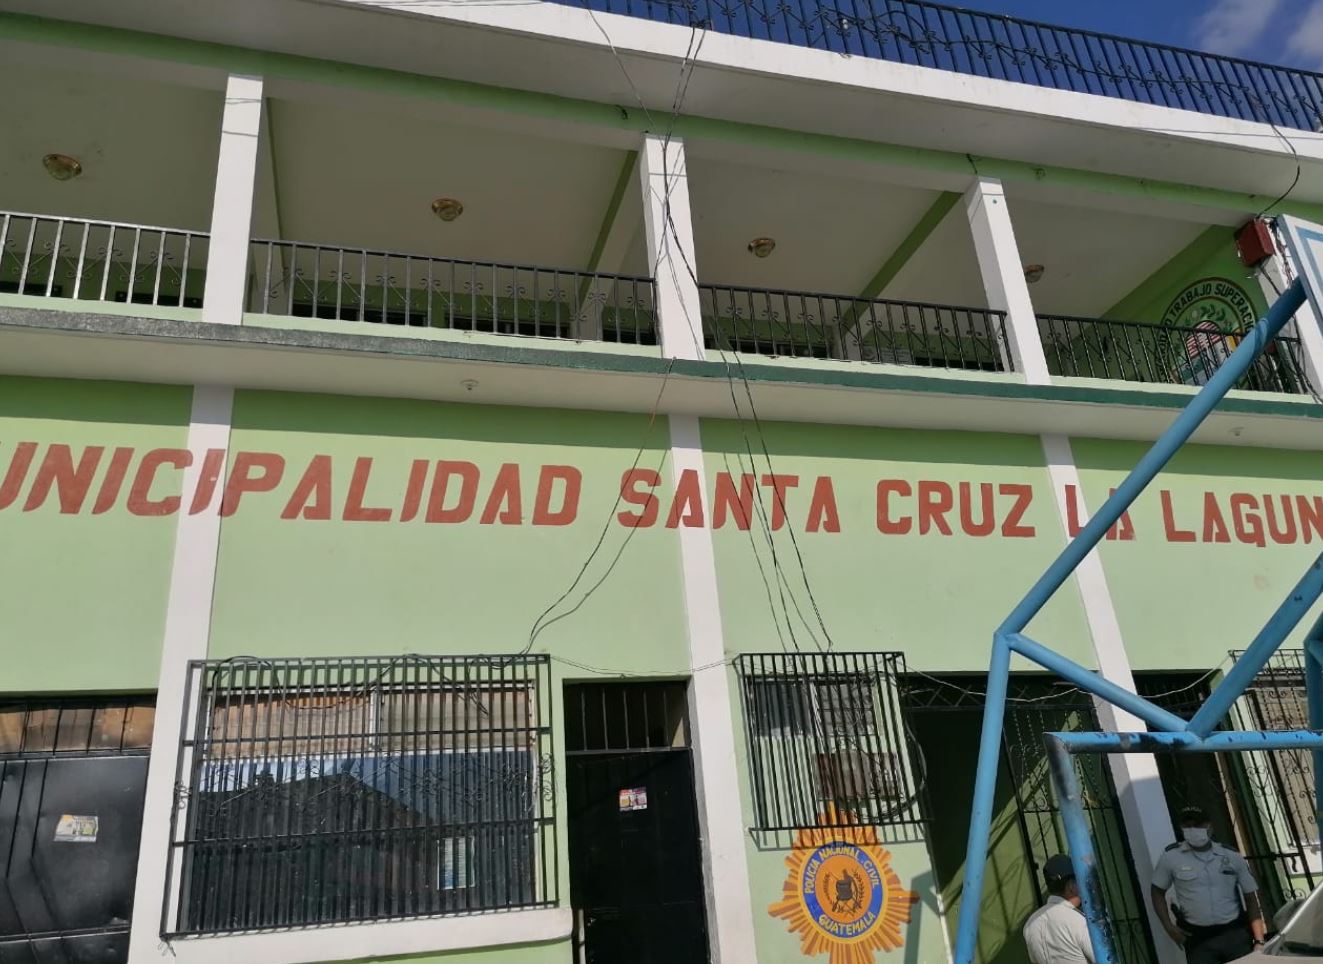 Municipalidad de Santa Cruz La Laguna, Sololá, en donde se lleva a cabo un cateo de la Feci. (Foto Prensa Libre: MP)